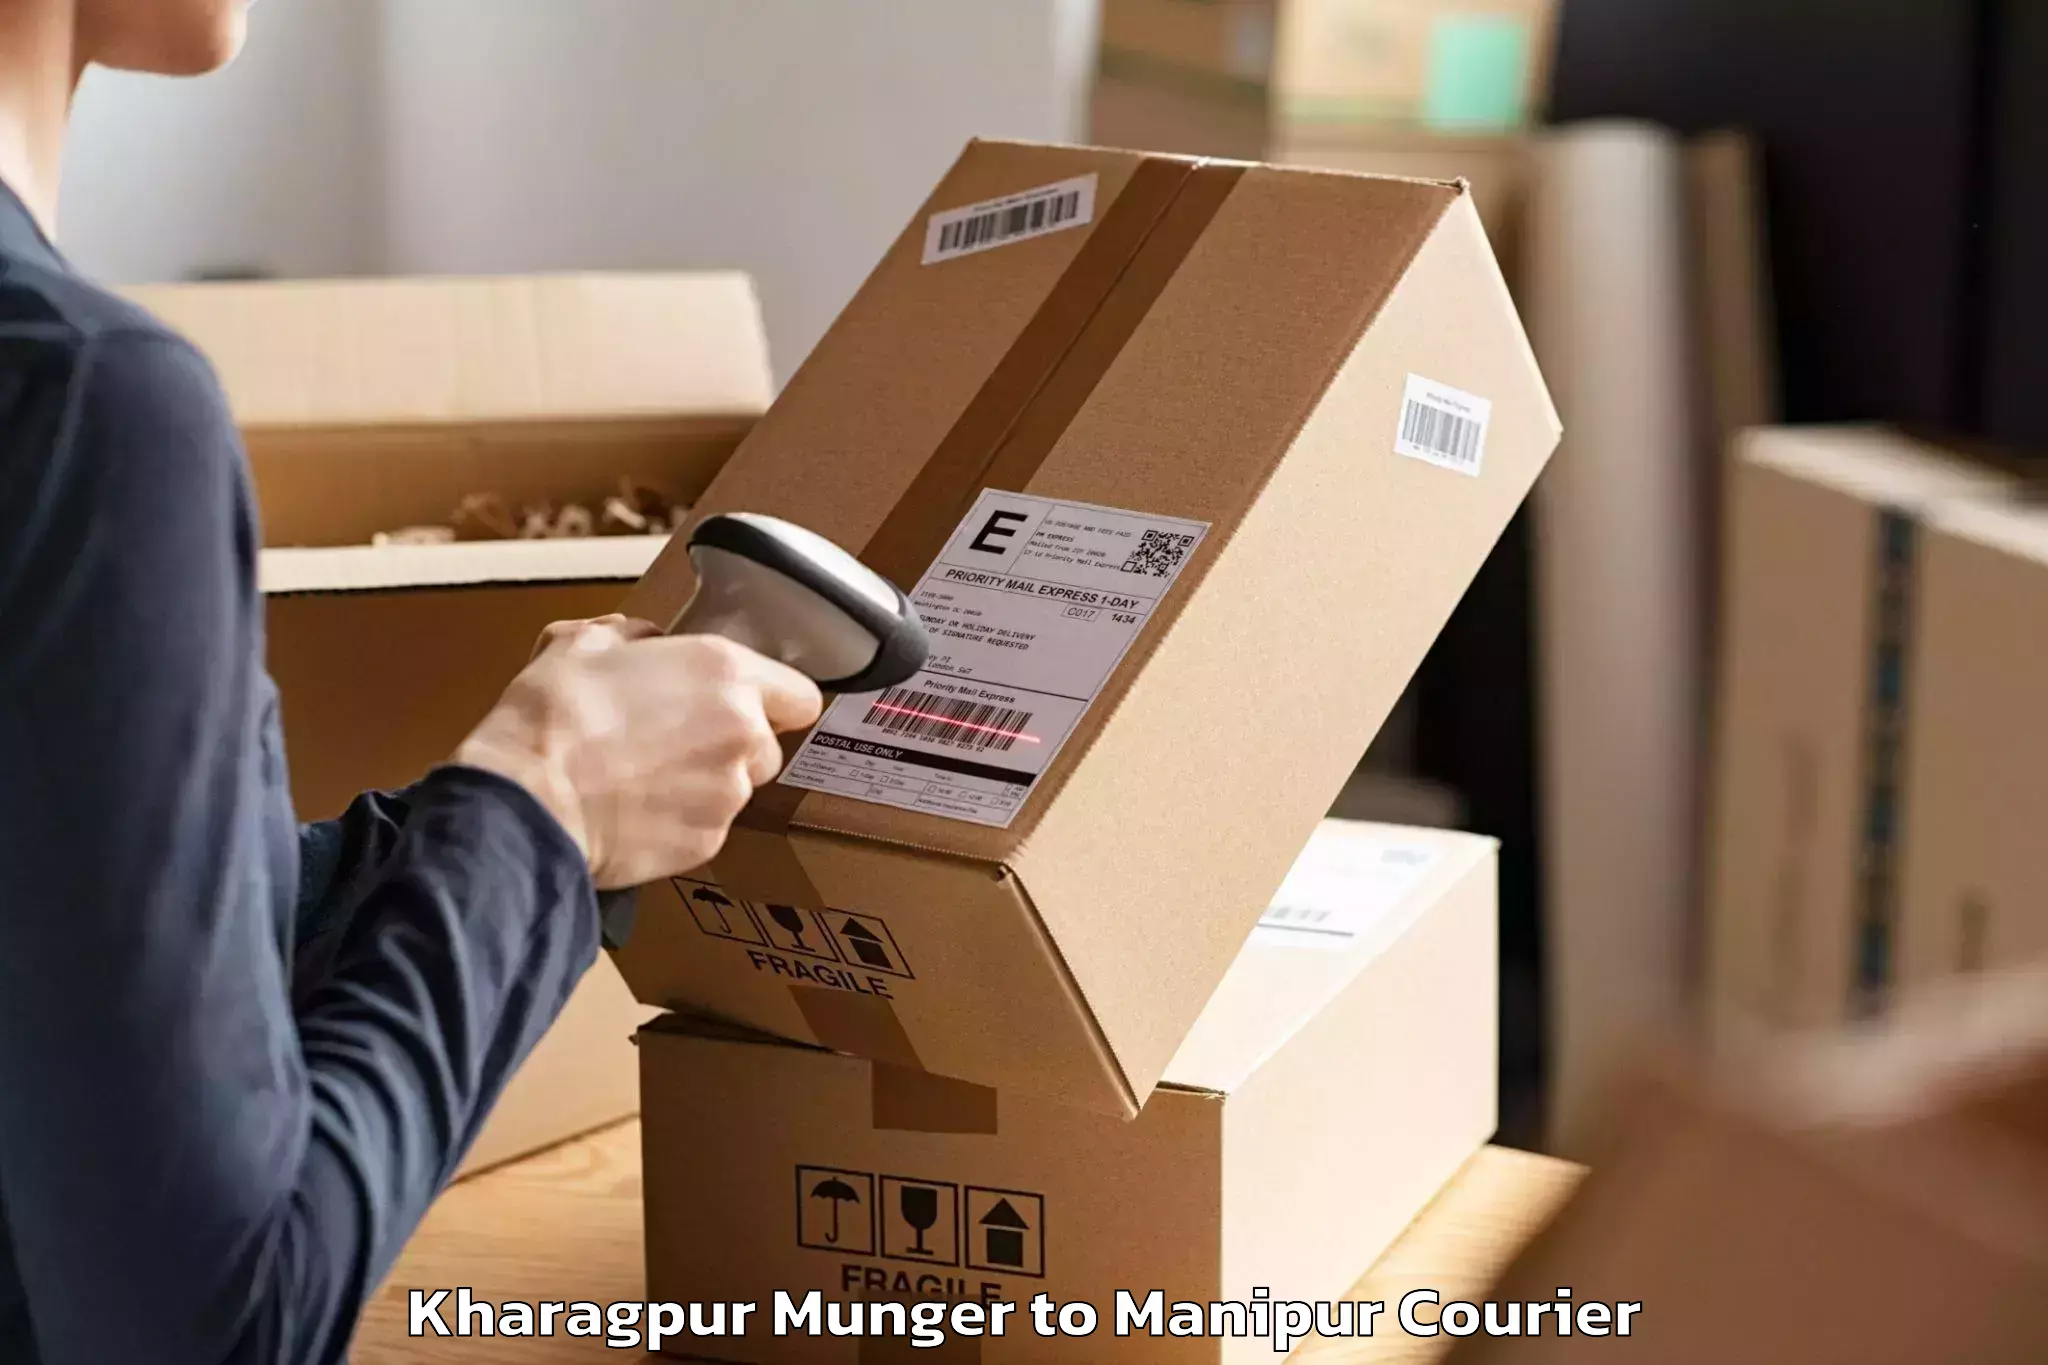 Furniture transport experts Kharagpur Munger to Manipur